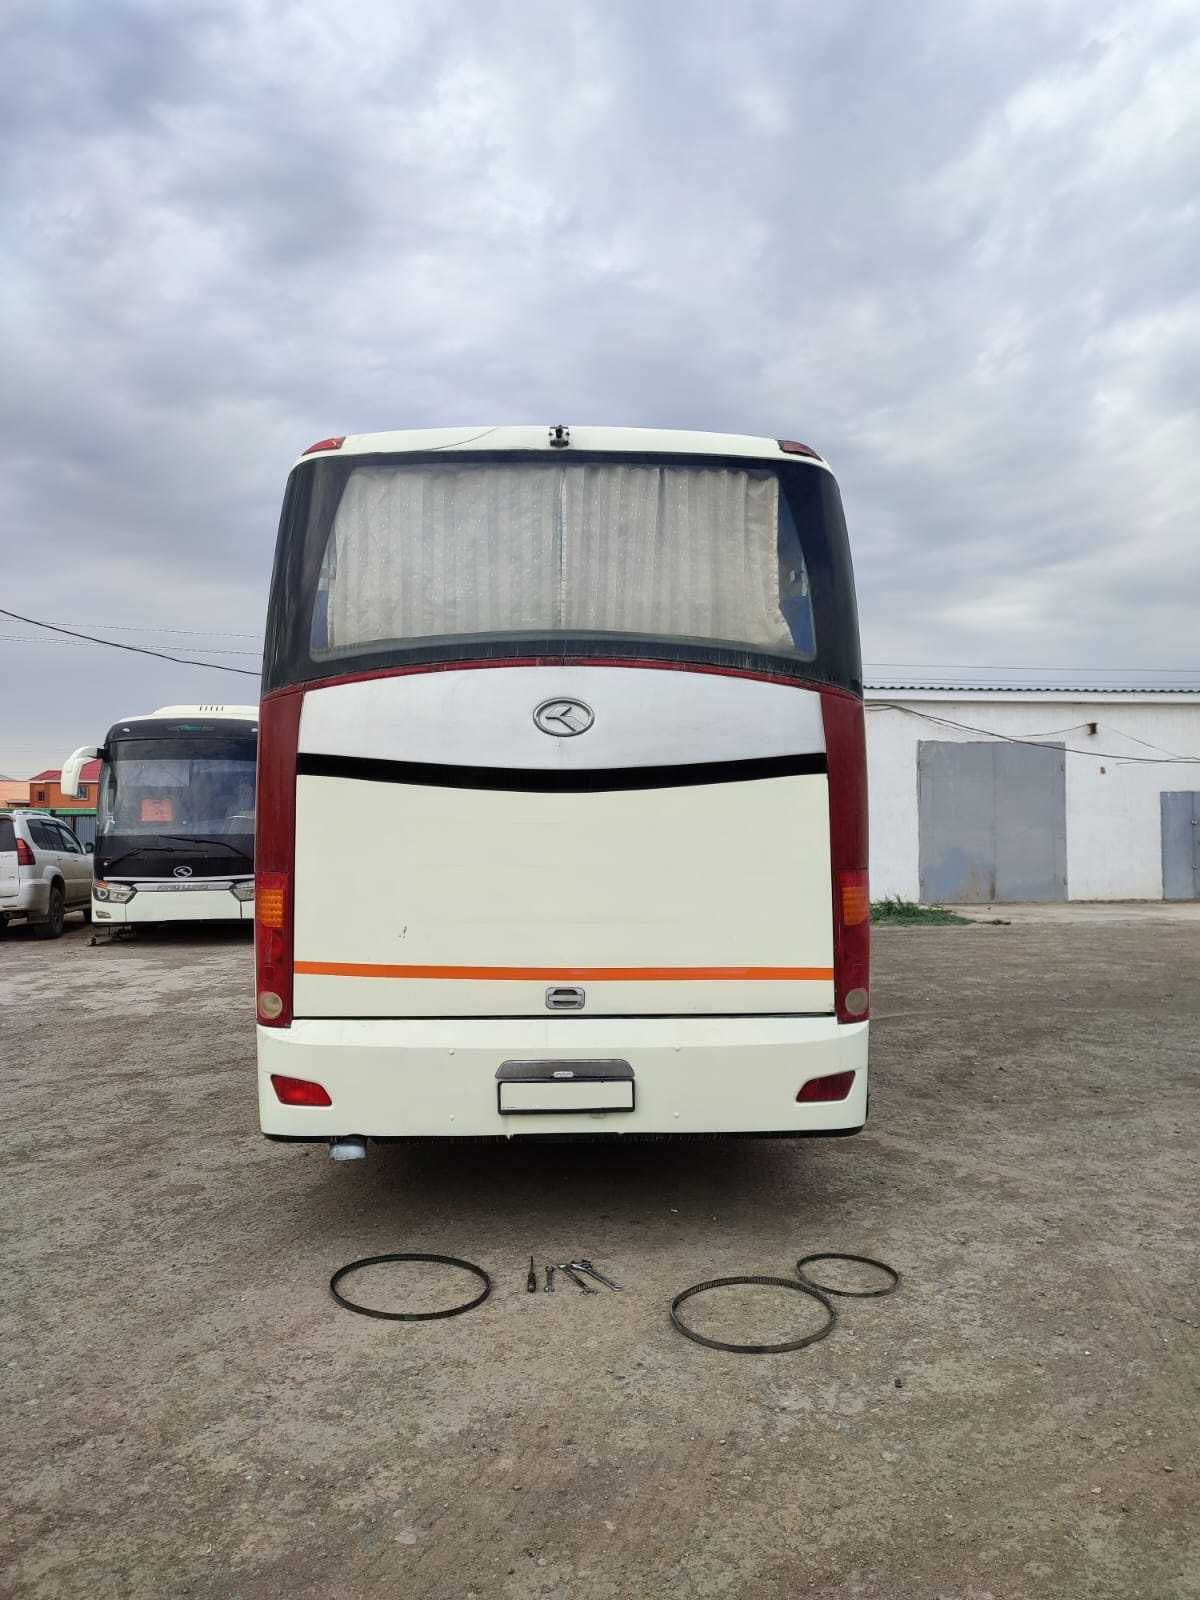 Продается автобус 50 мест Кинг Лонг туристический в отличном состоянии